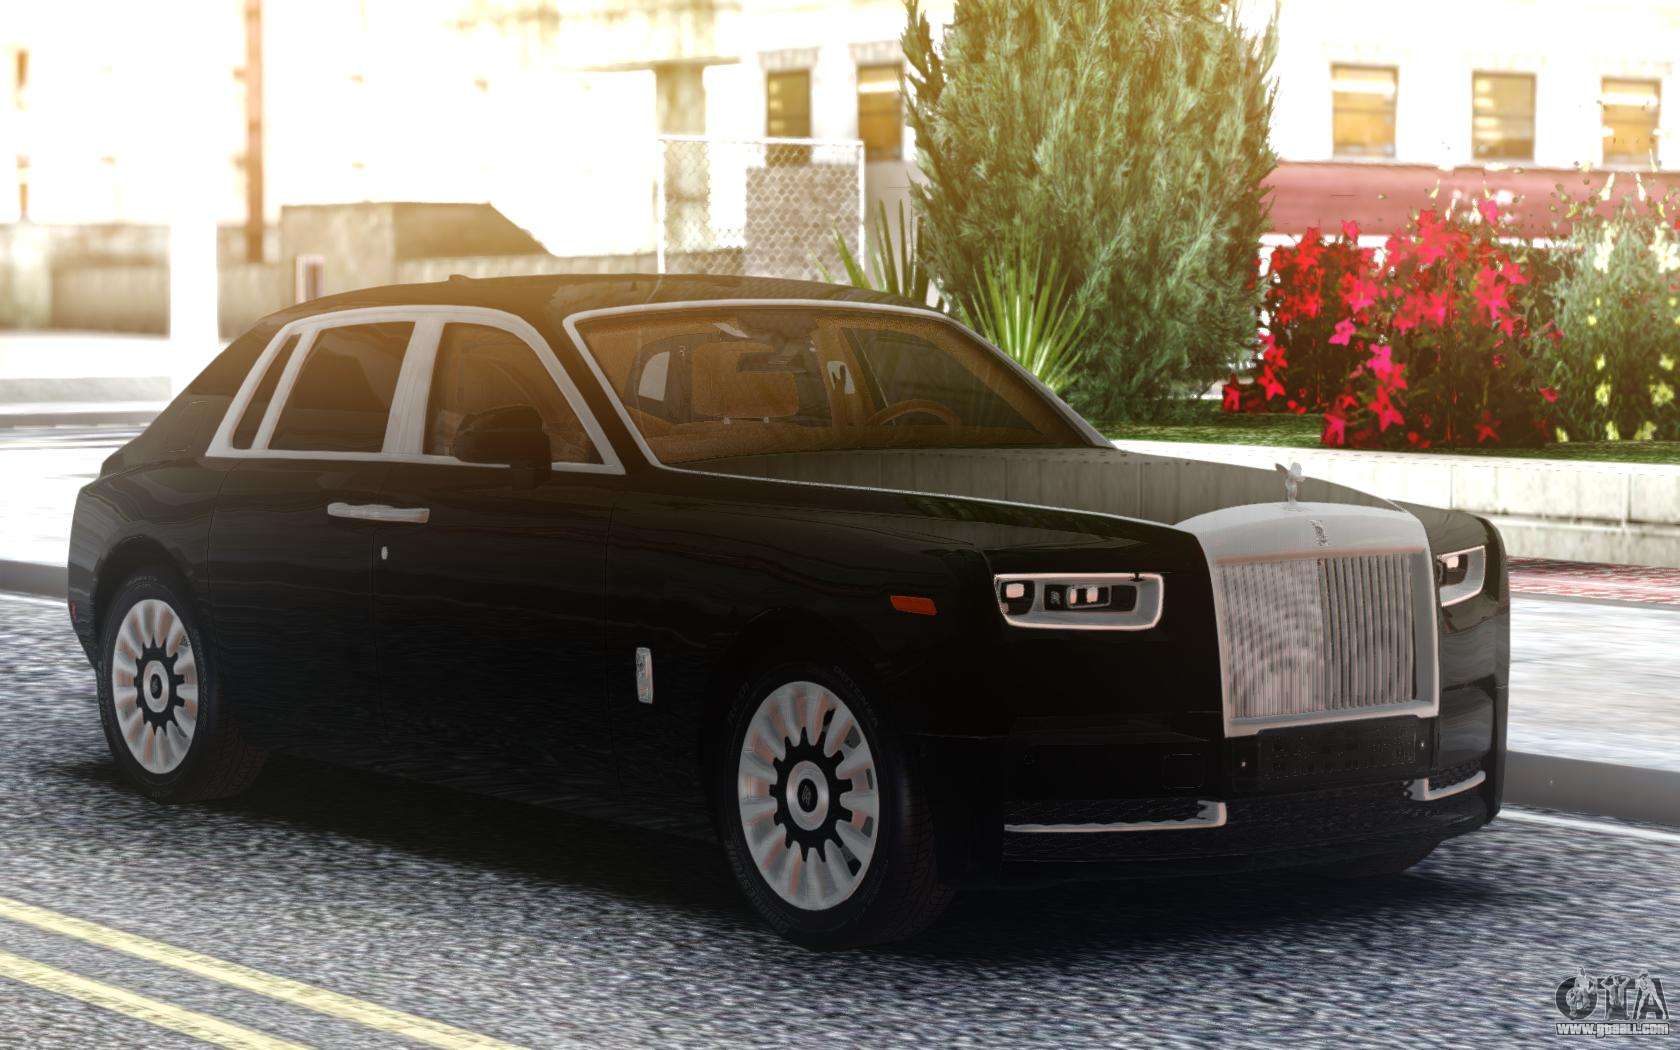 GTA San Andreas 2014 Rolls Royce Wraith Coupe Mod  GTAinsidecom